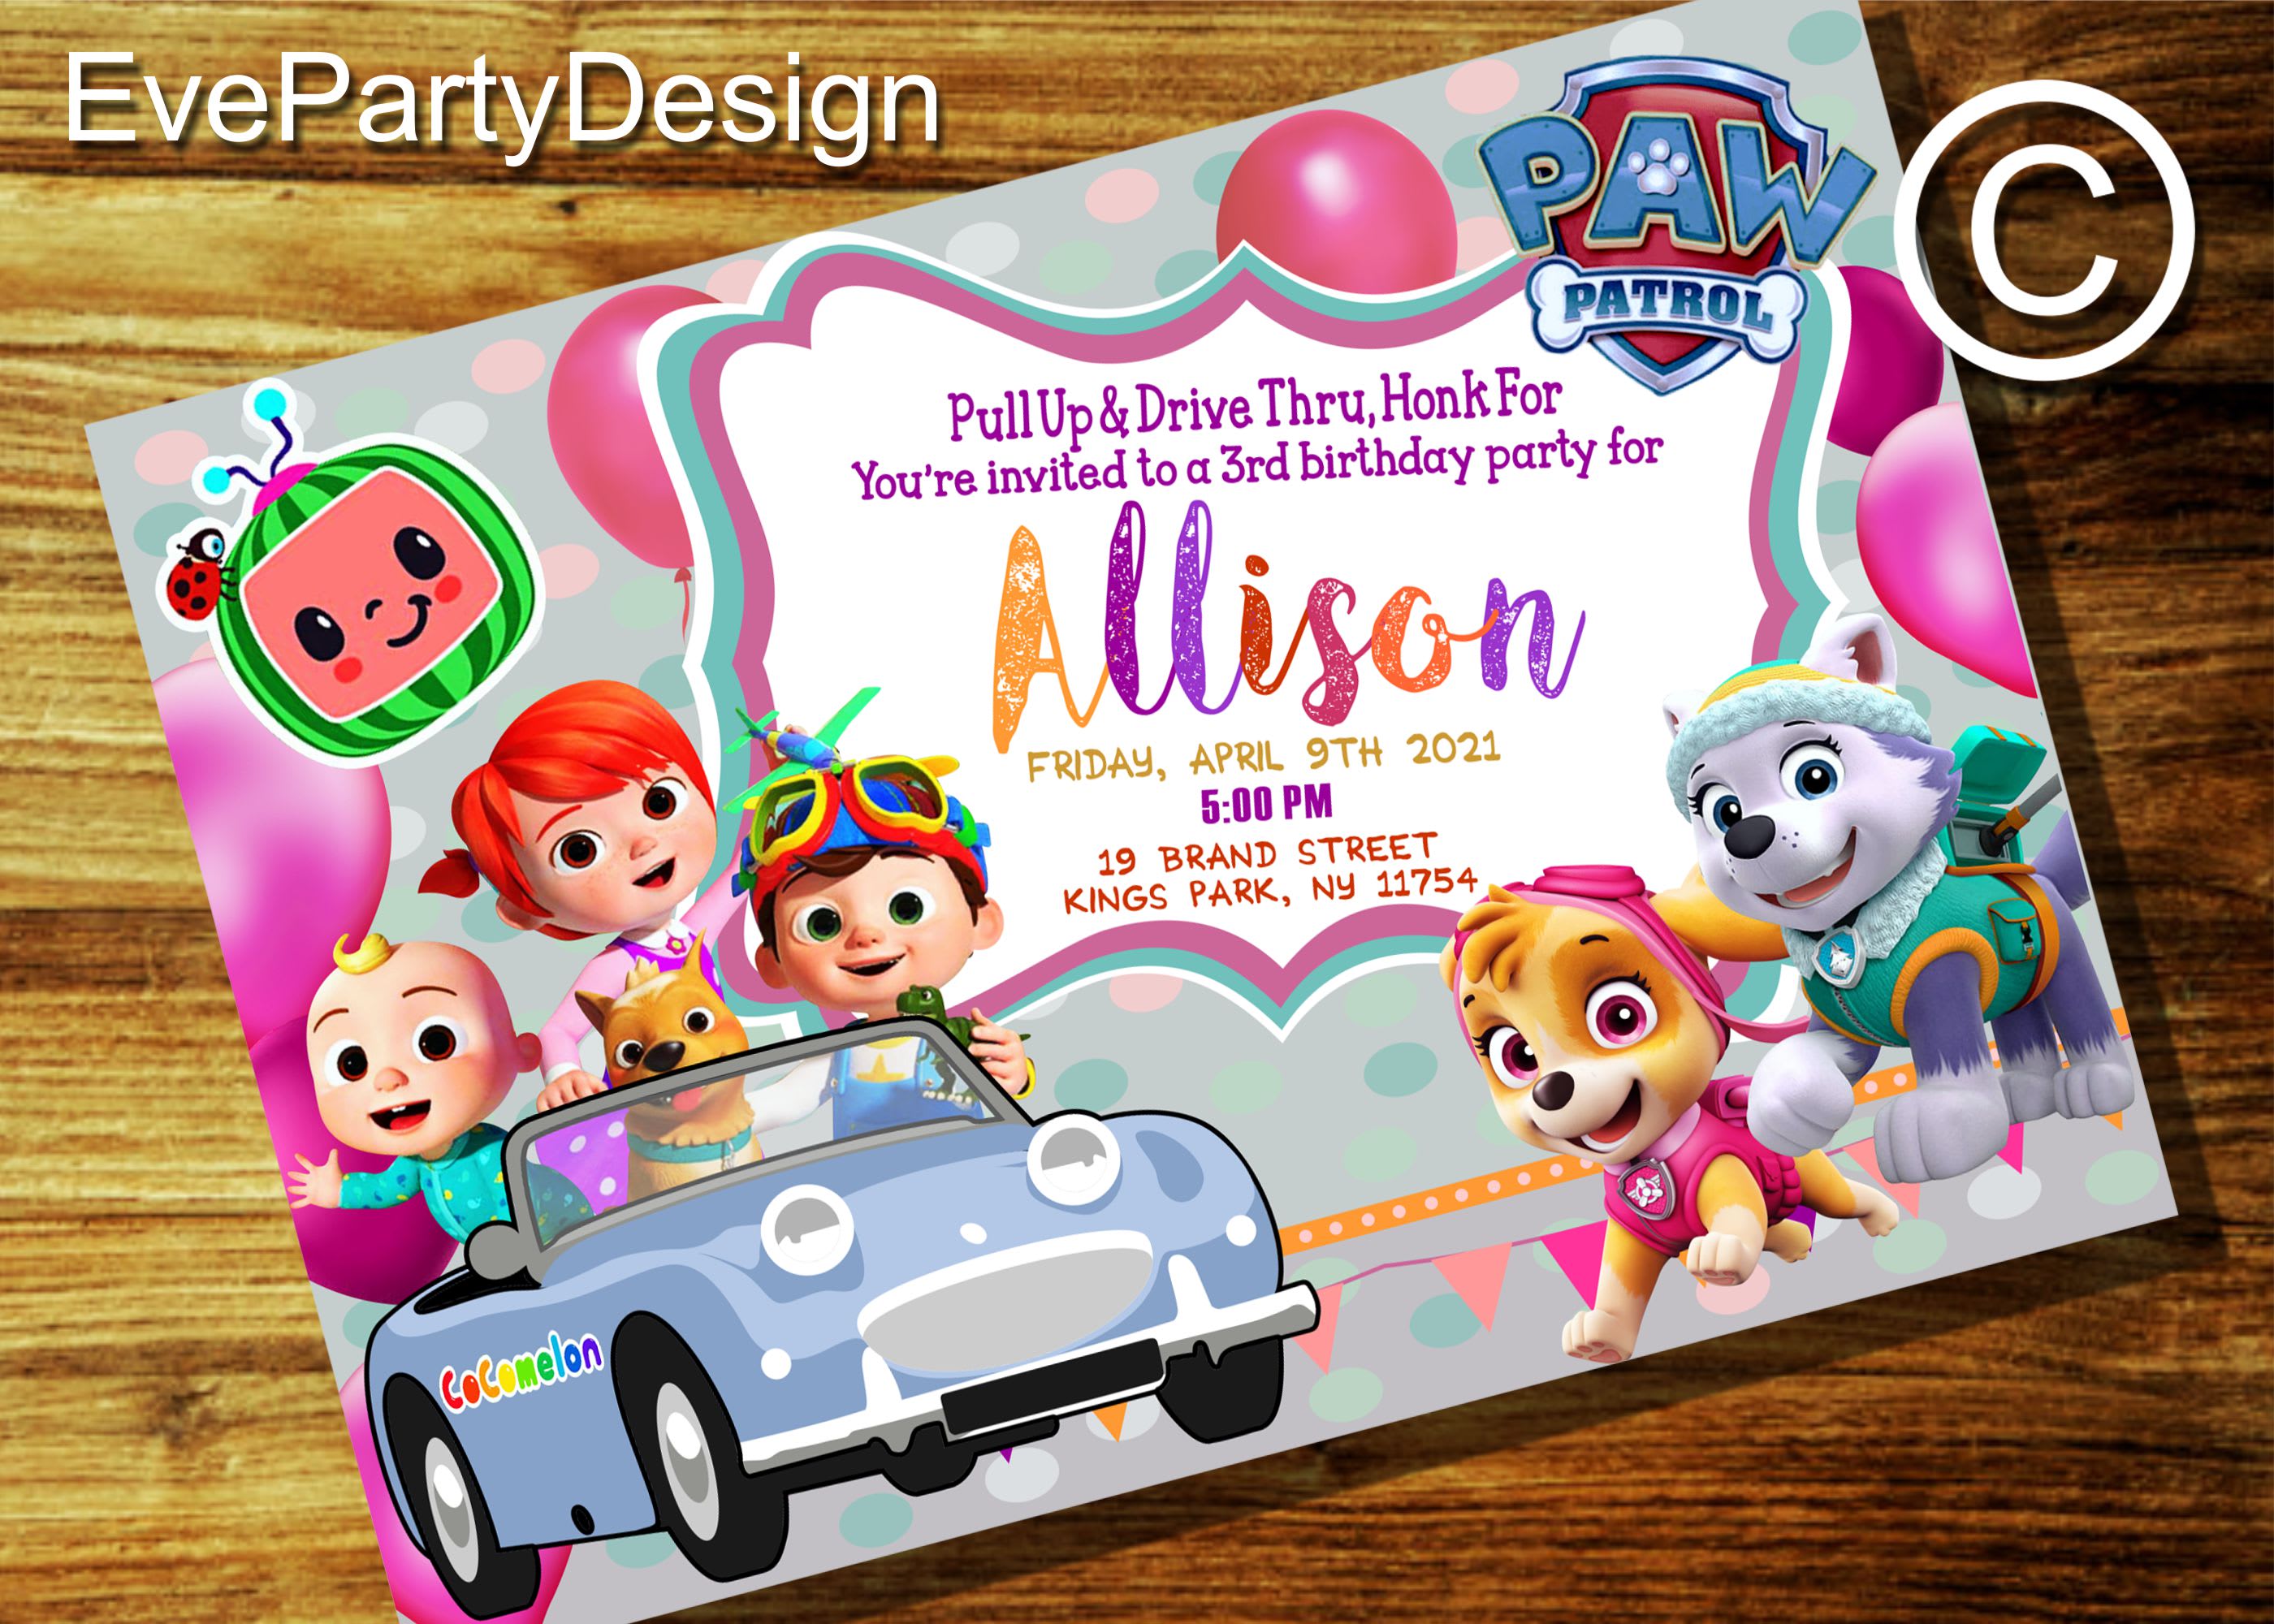 Disegna un invito di compleanno cocomelon per la tua festa per bambini